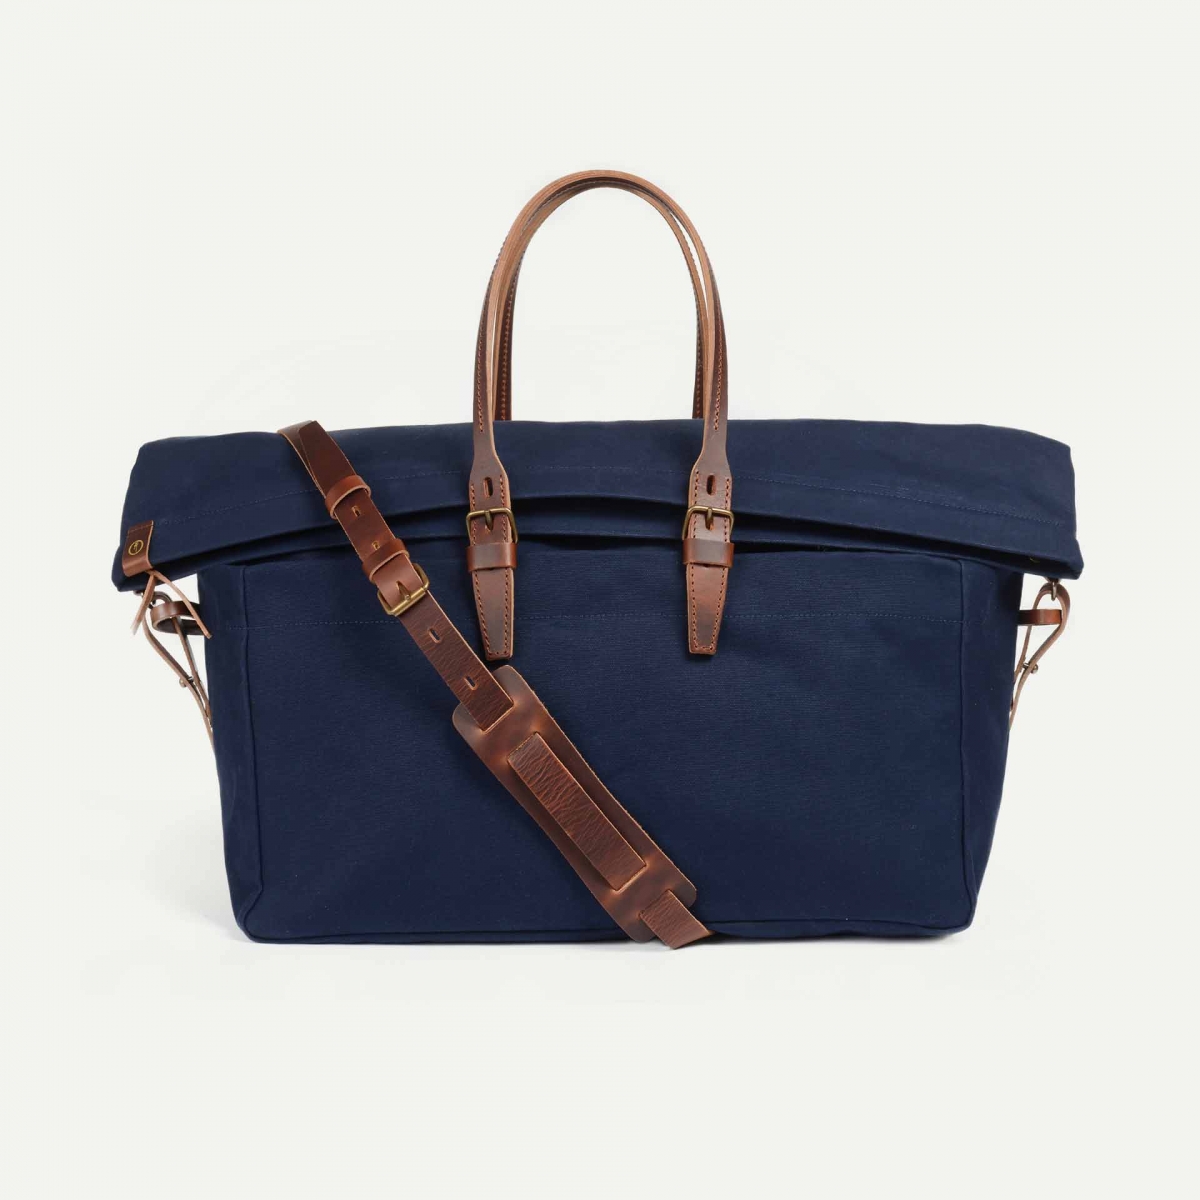 Cabine Travel bag - Navy Blue (image n°1)